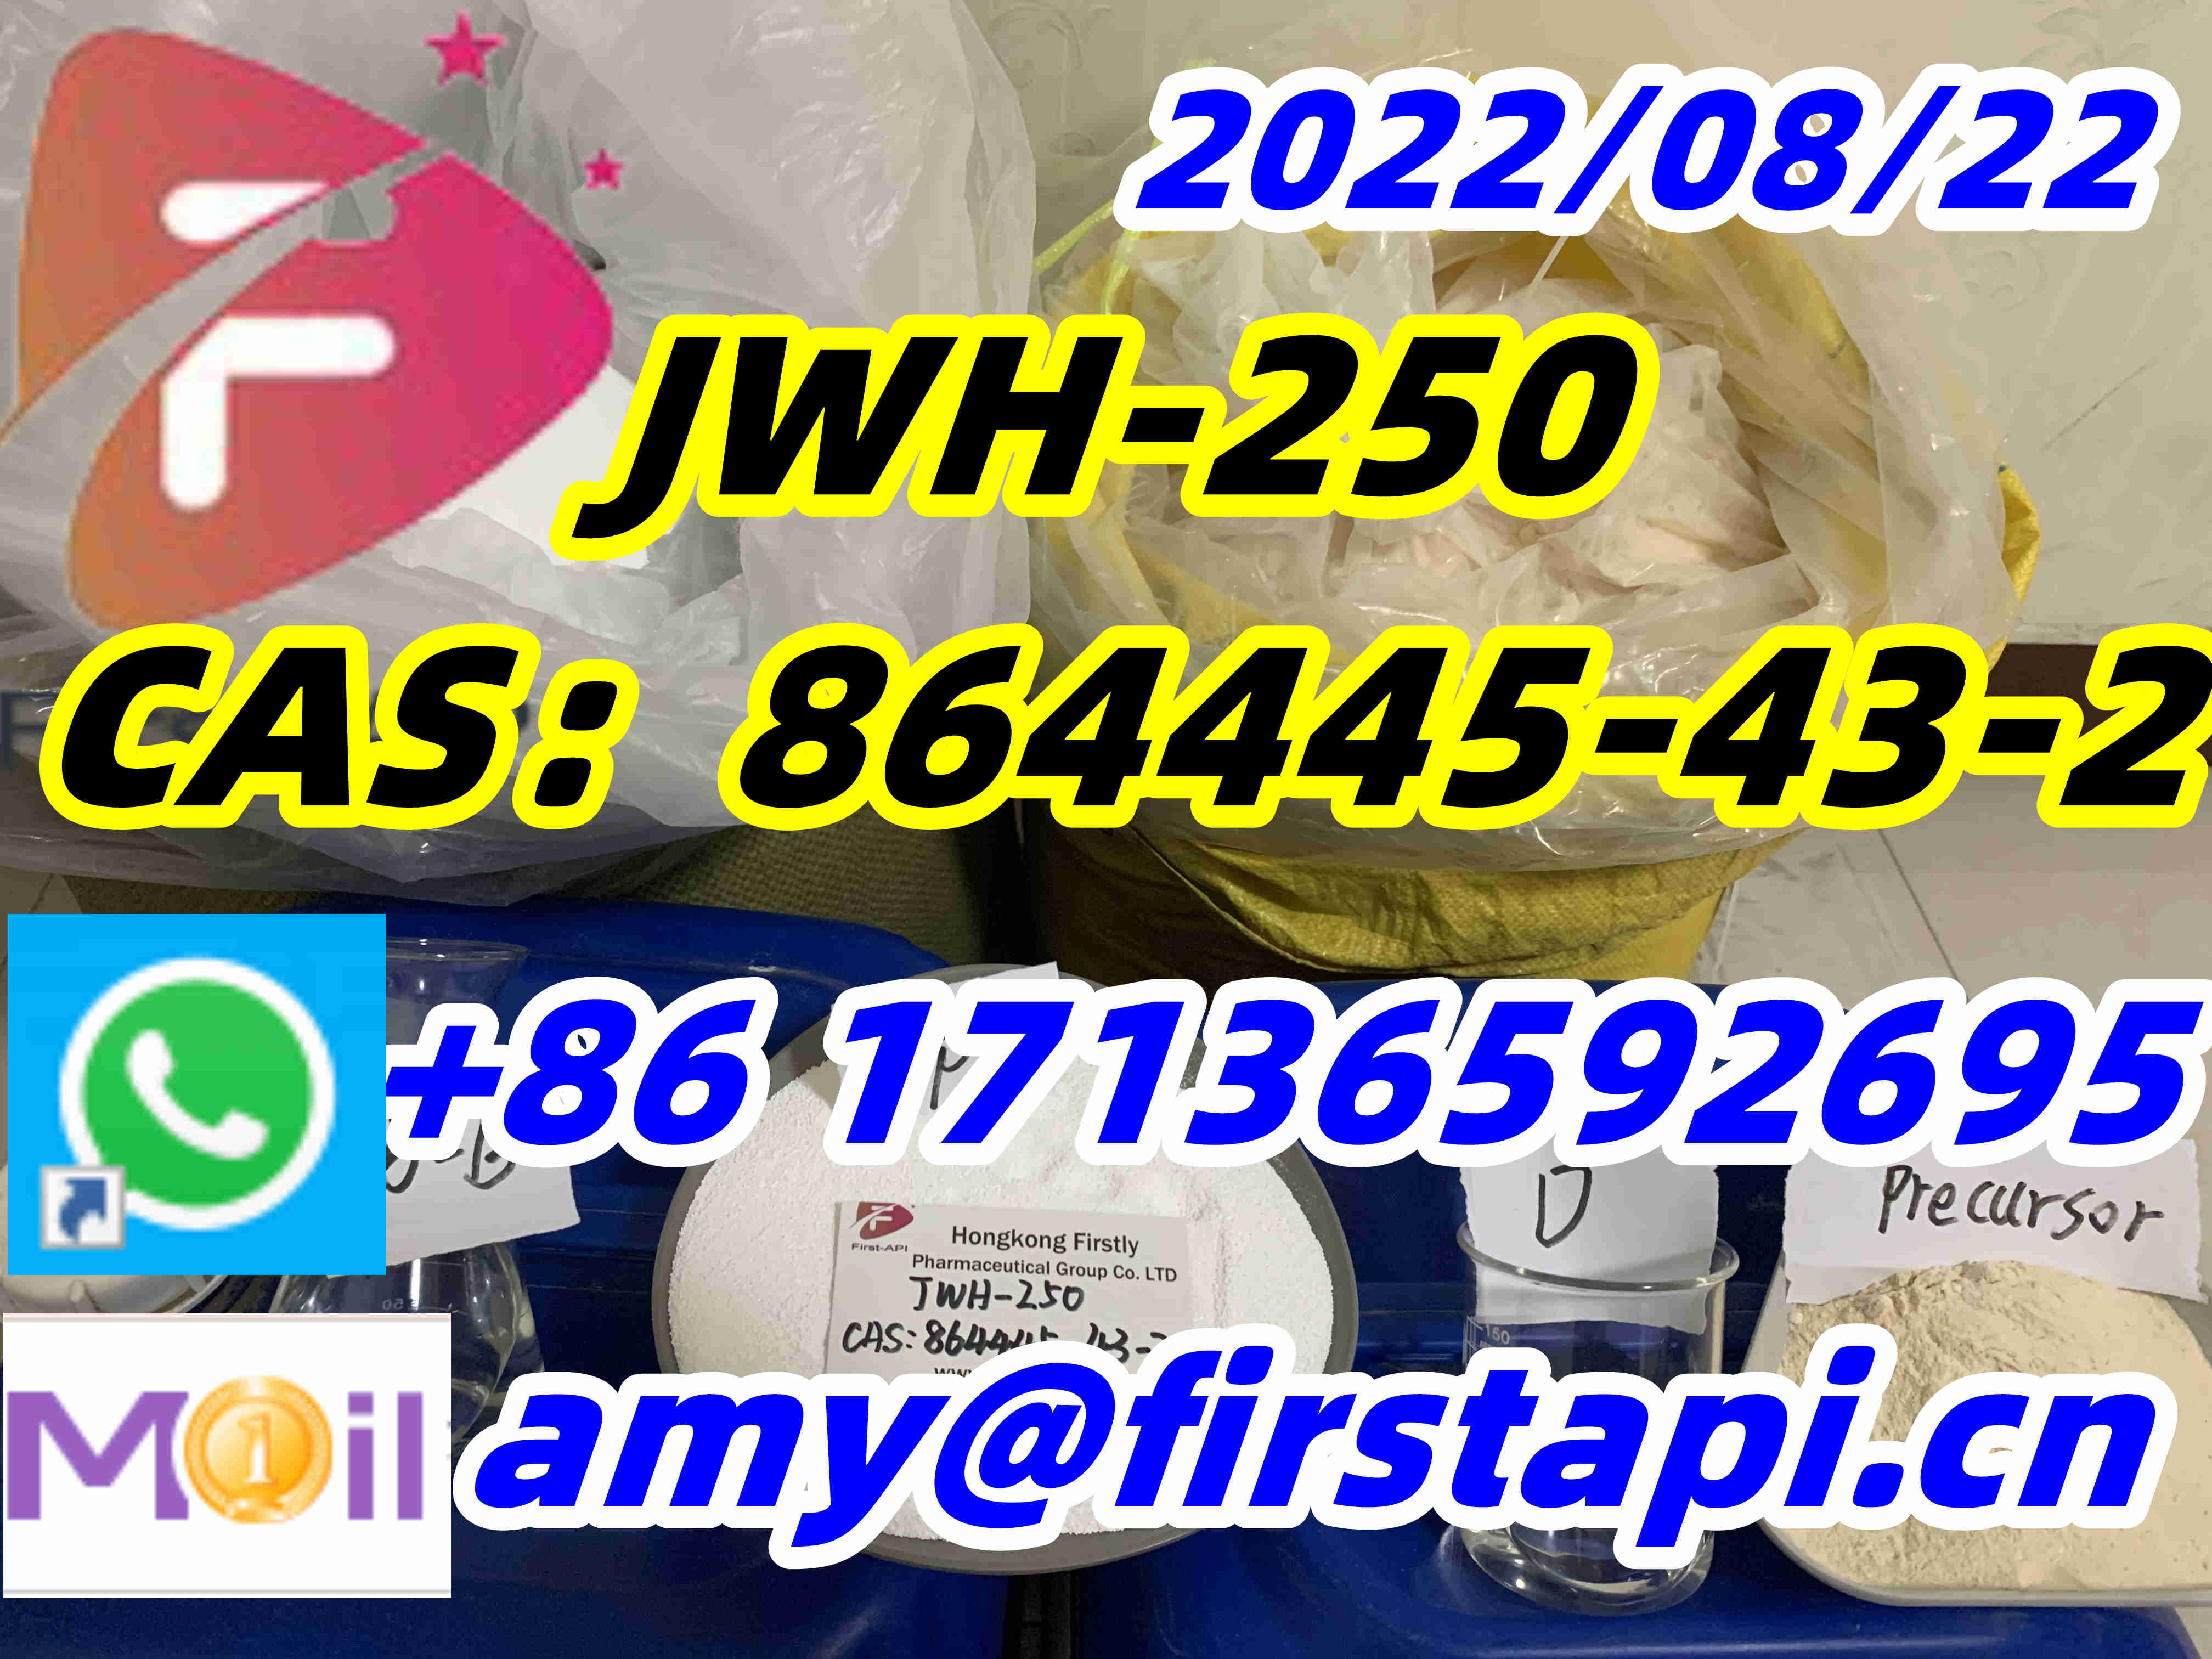 High quality,low price,JWH-250,5cladba，6cladba，adbb，CAS:864445-43-2 - photo